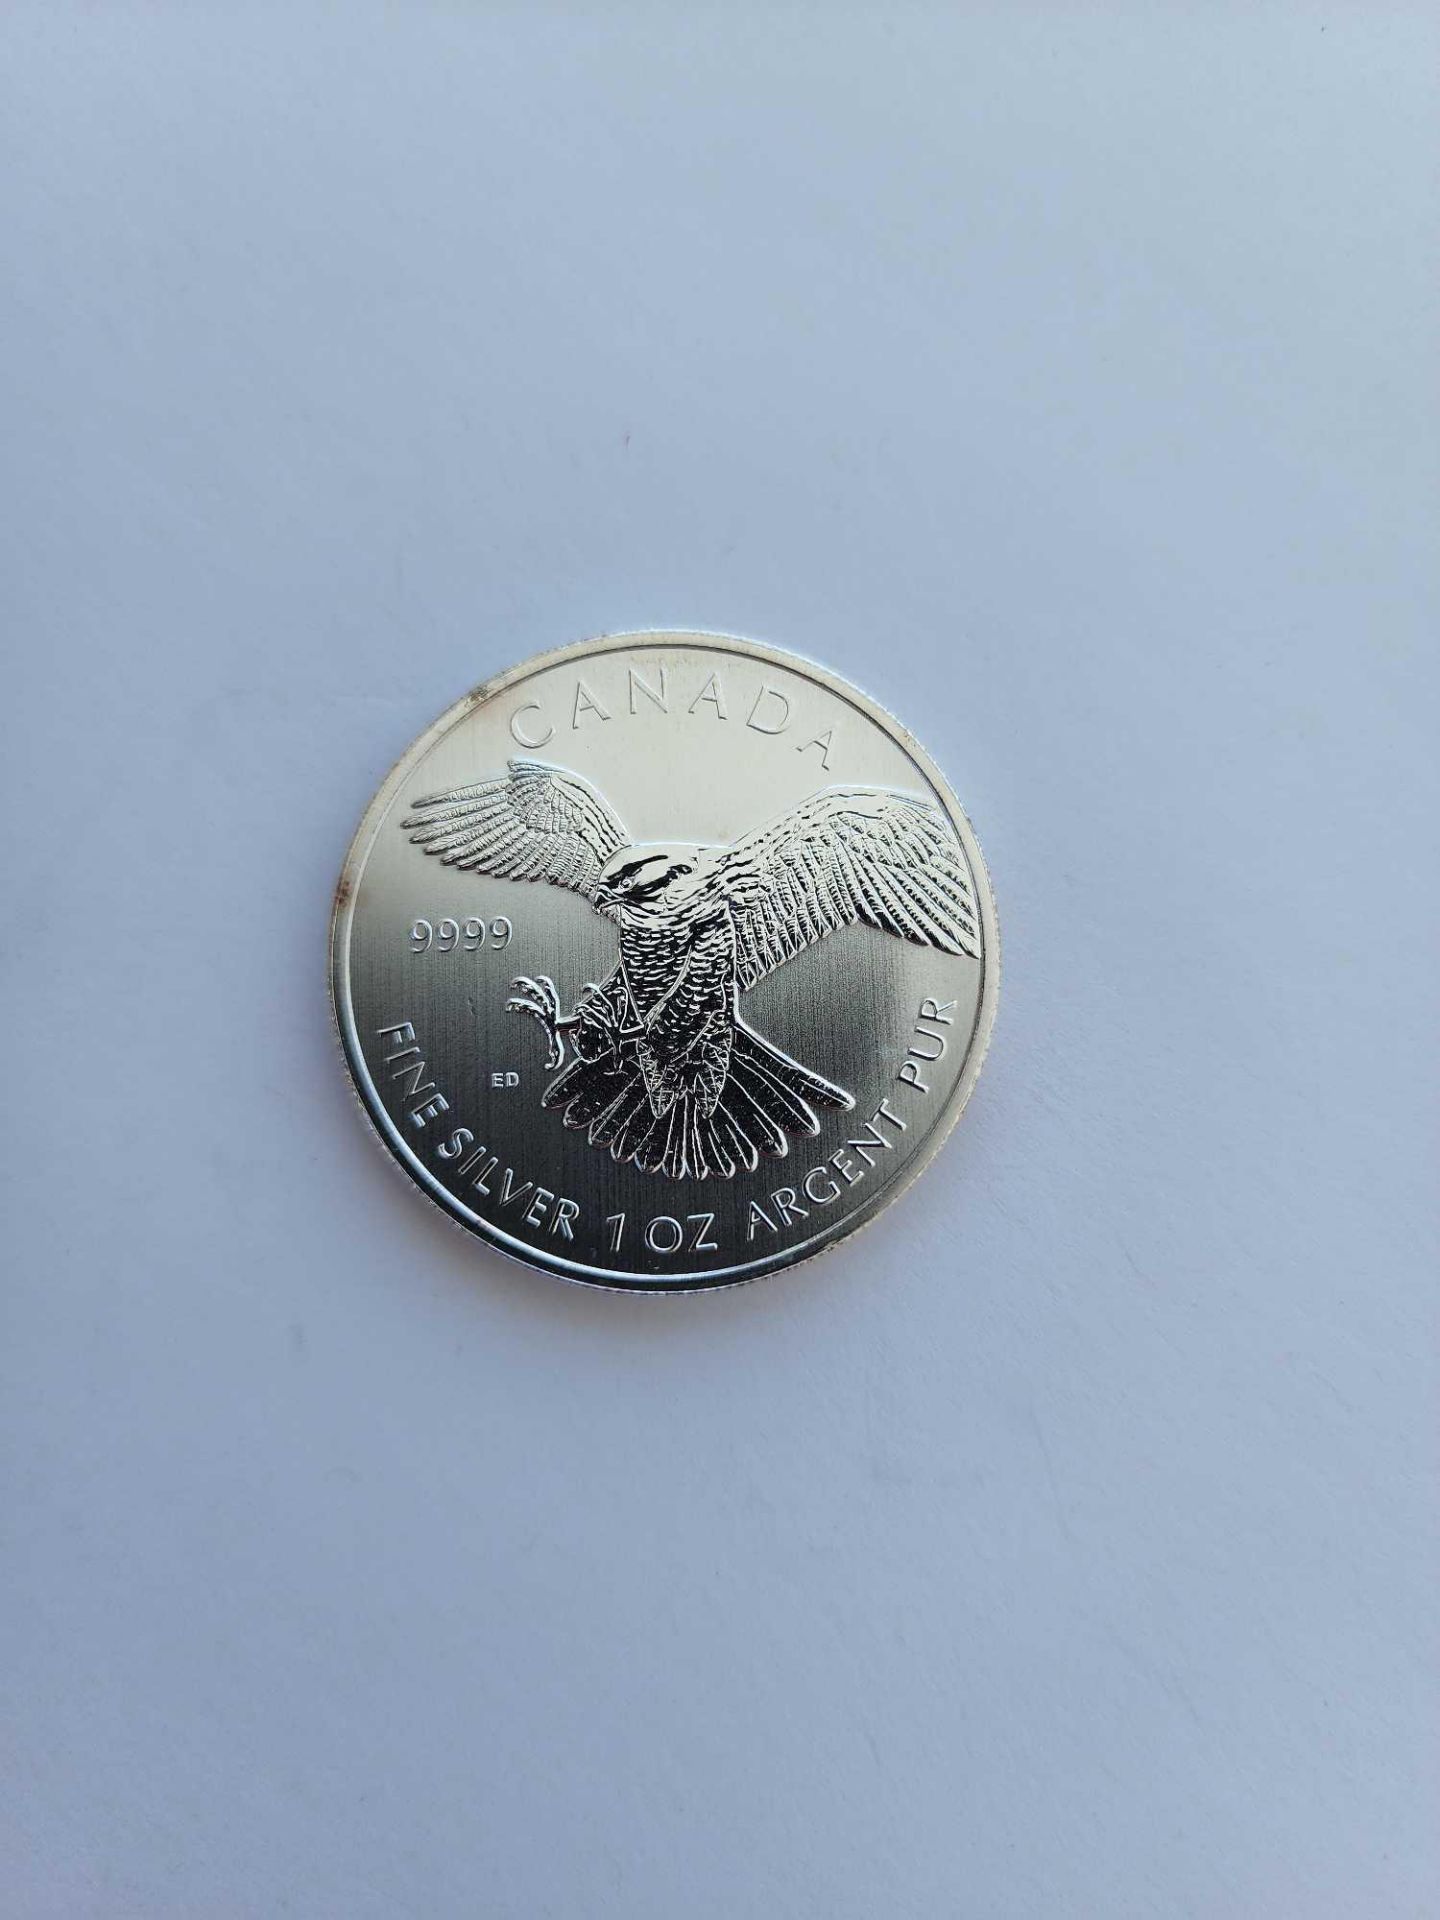 3 1 oz Silver canada birds silver coins - Image 5 of 5